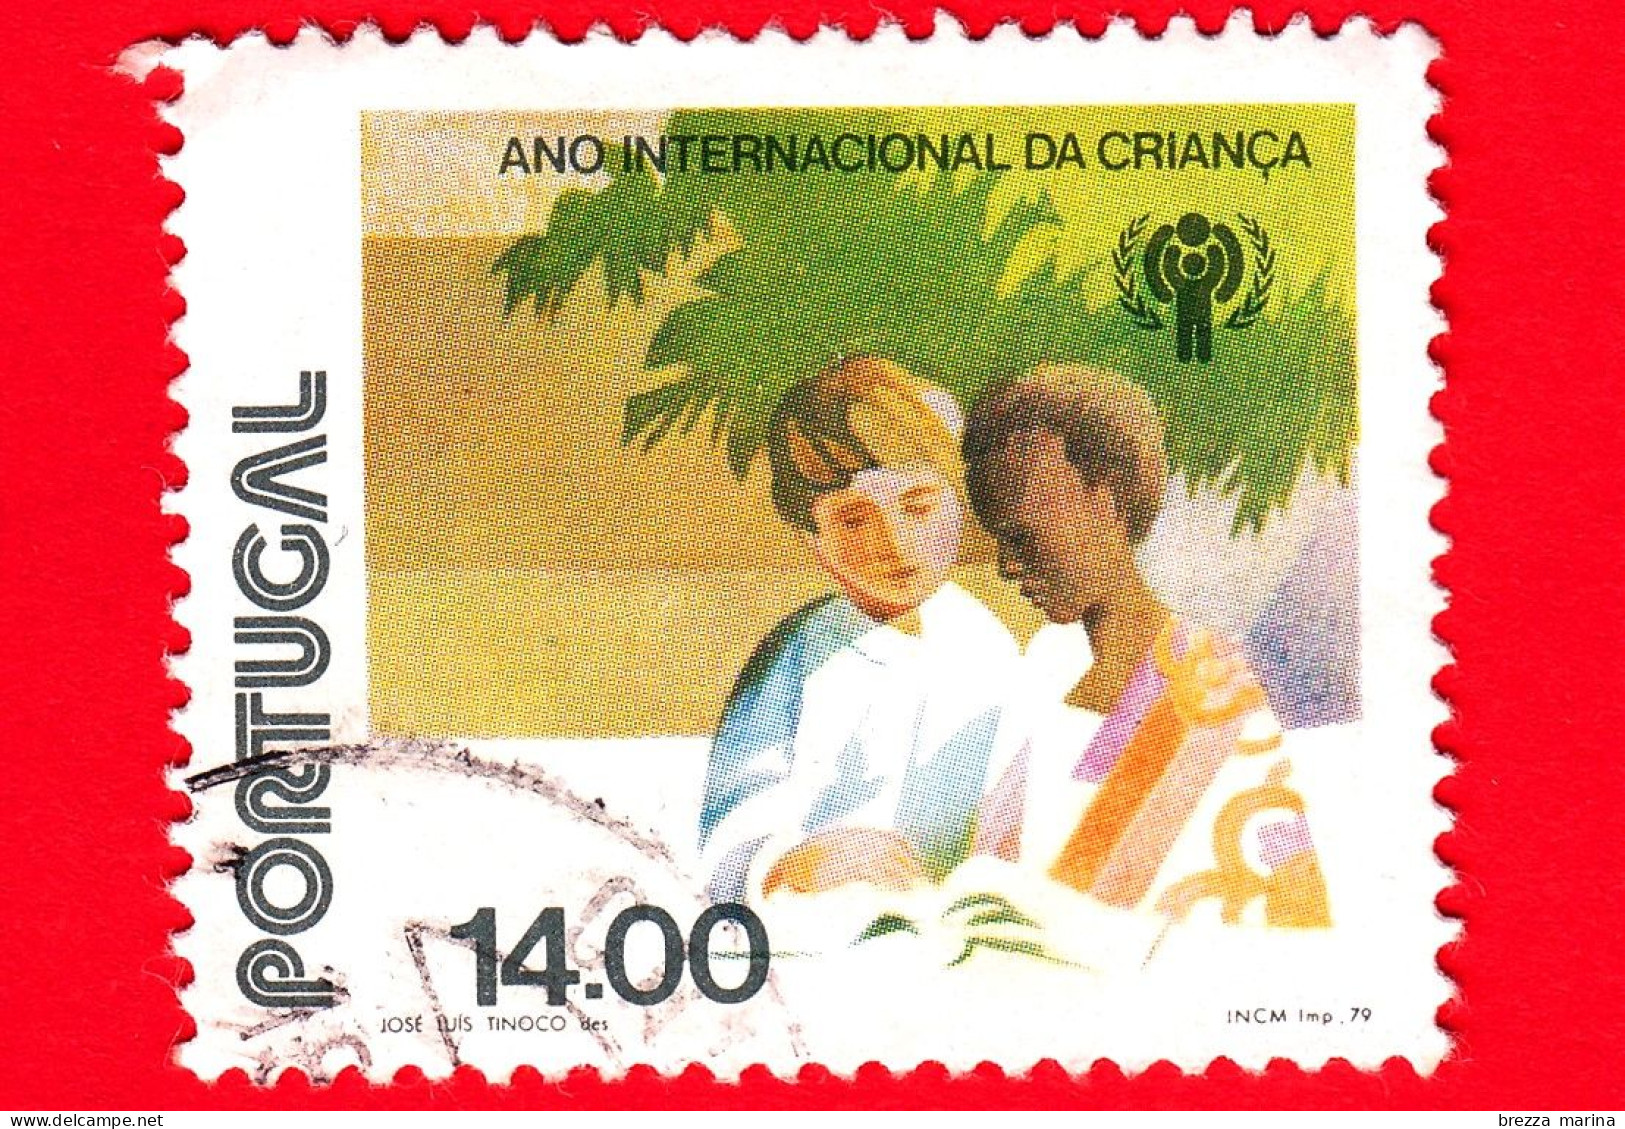 PORTOGALLO - Usato - 1979 - Anno Internazionale Dei Bambini - Ragazzo Bianco E Ragazzo Nero - 14.00 - Oblitérés